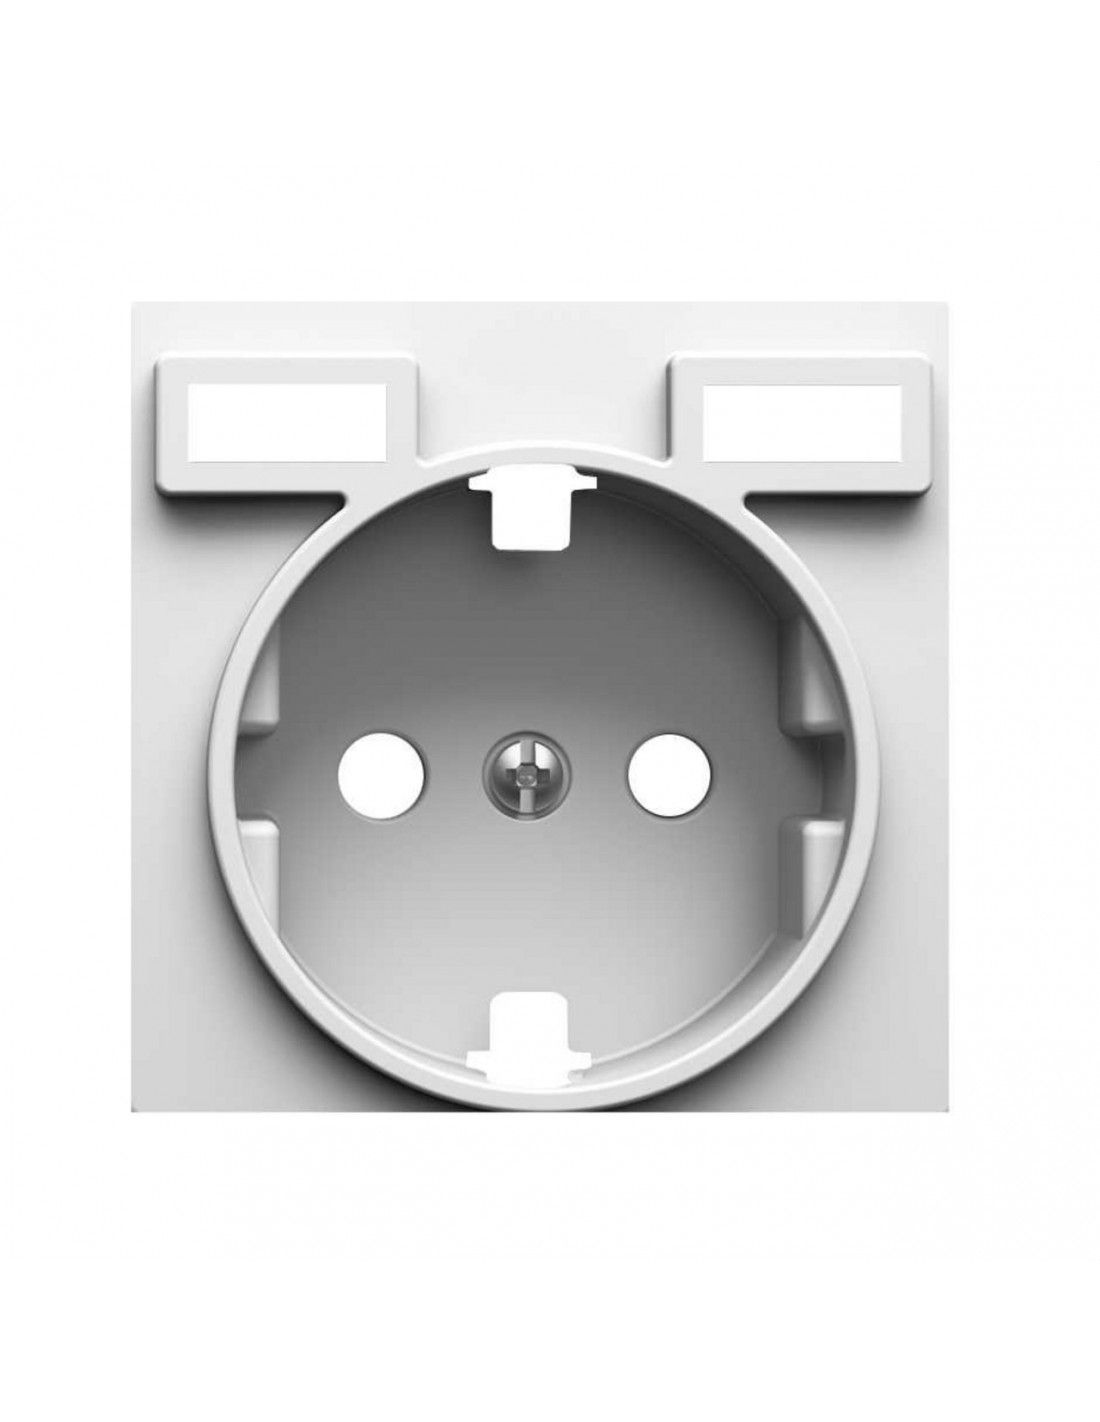 Placa para mecanismos electrónicos giratorios Simon 82 Concept Blanco Mate